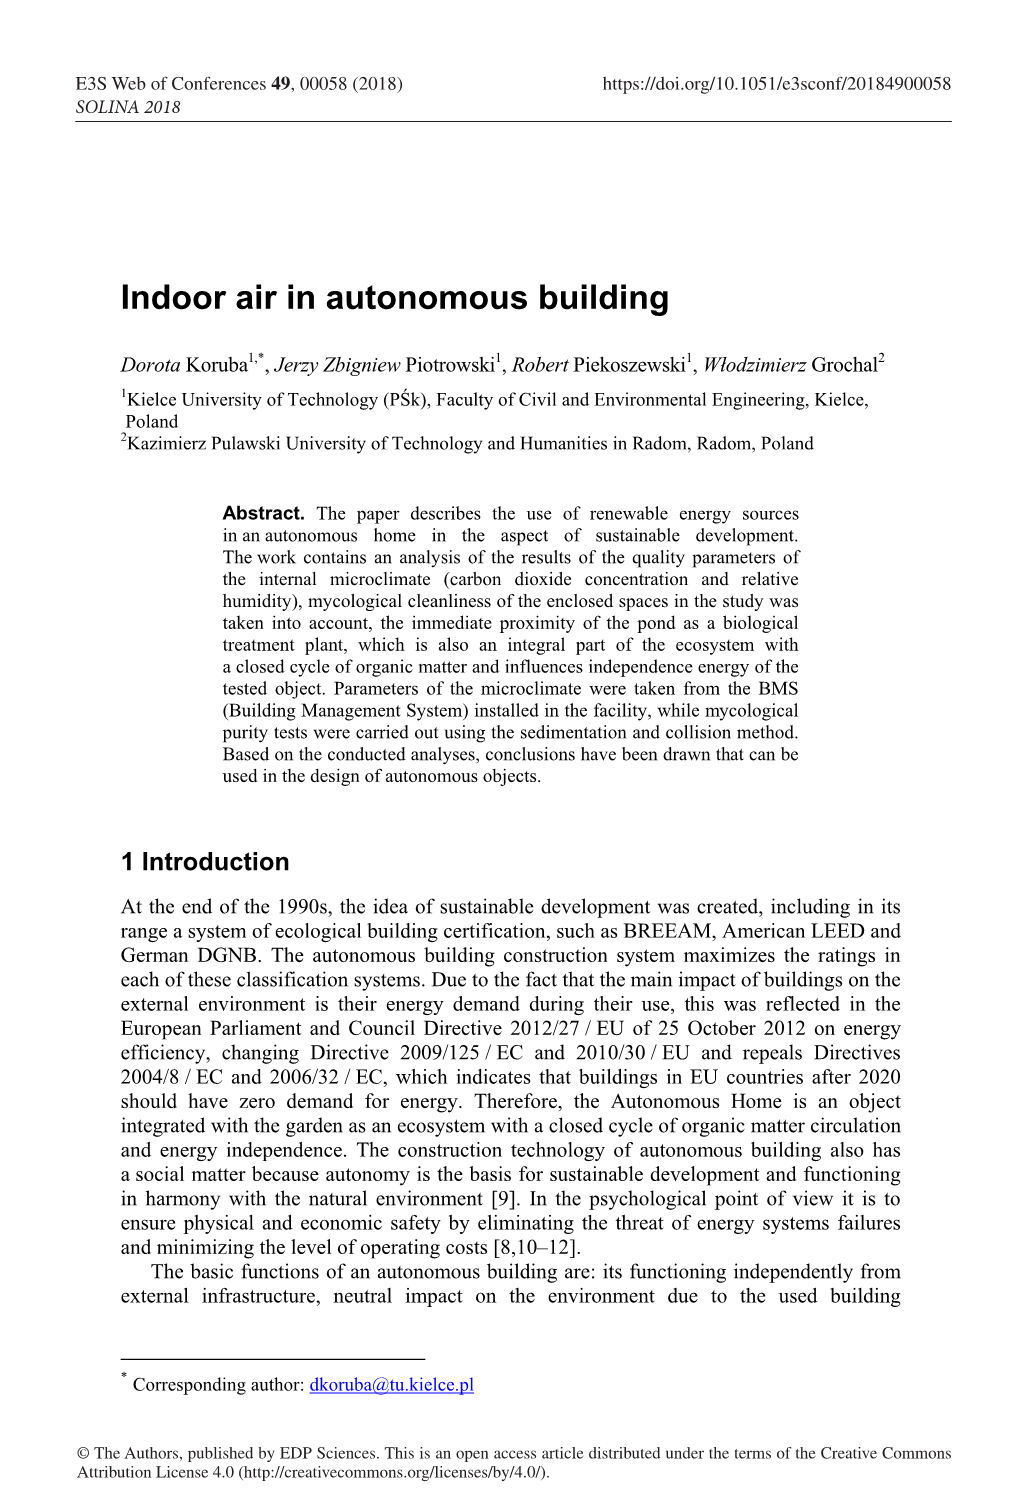 Indoor Air in Autonomous Building